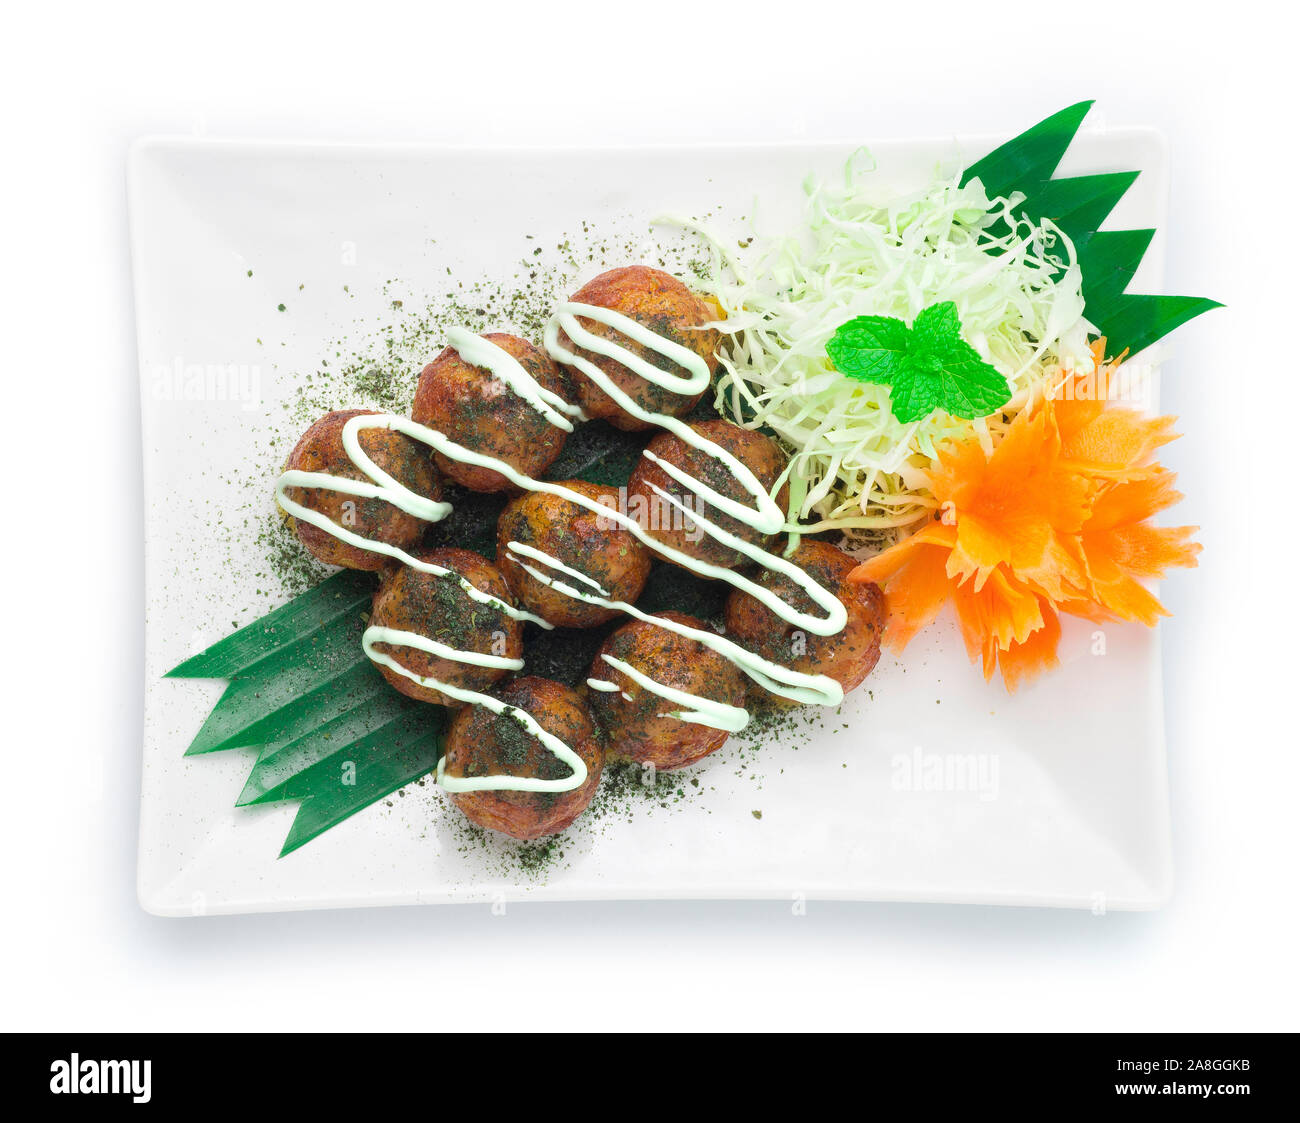 Fotografia alimentare di takoyaki su piastra isolata su sfondo bianco